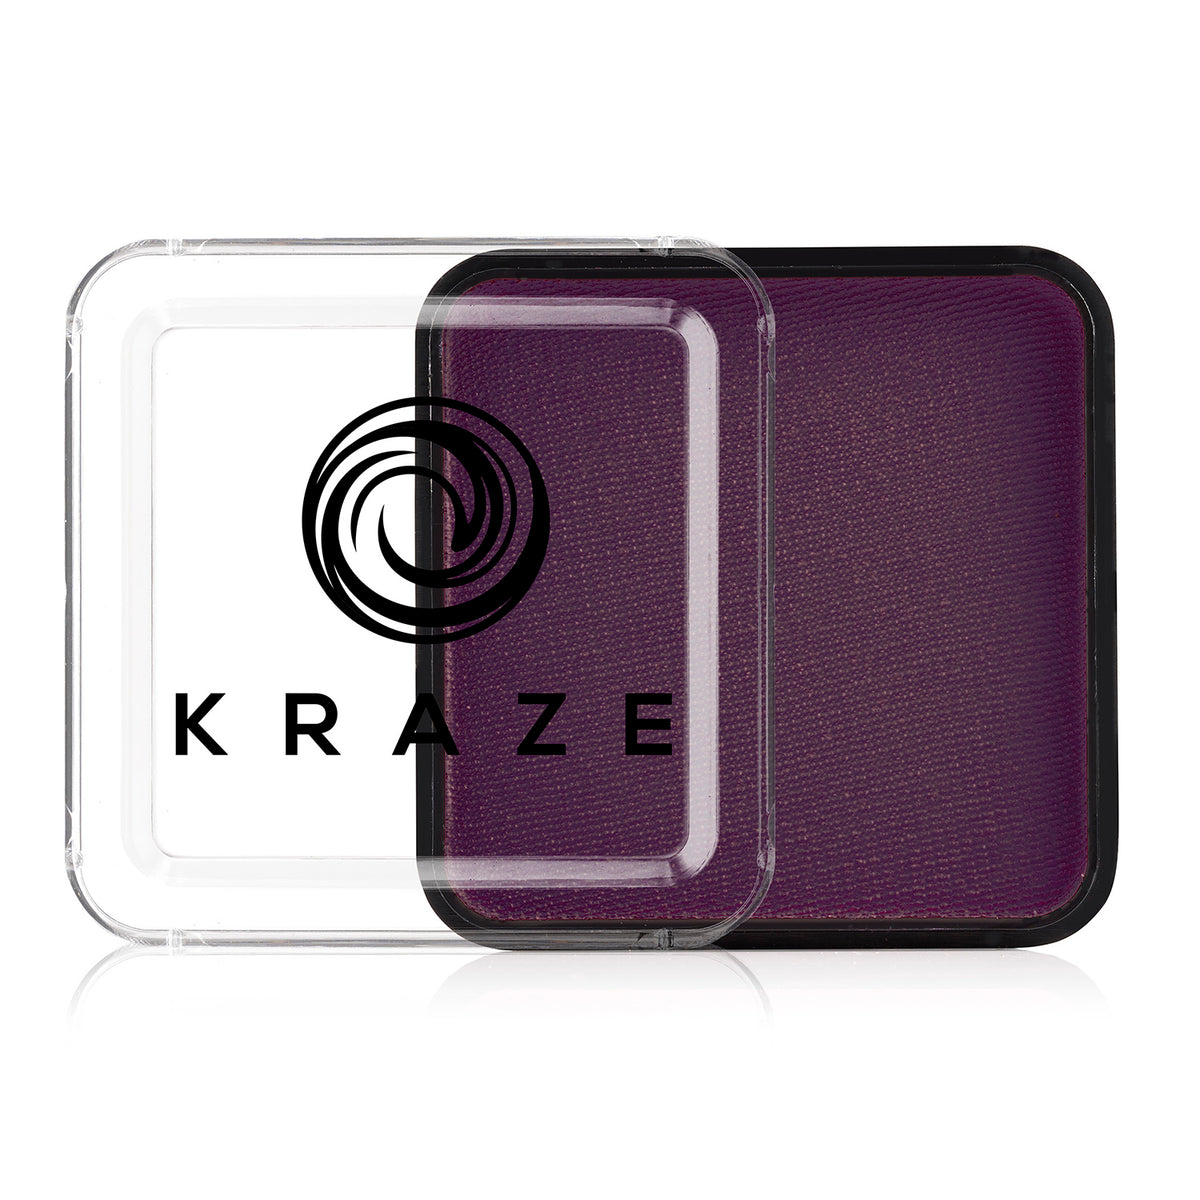 Kraze FX Face Paint - Purple (25 gm)